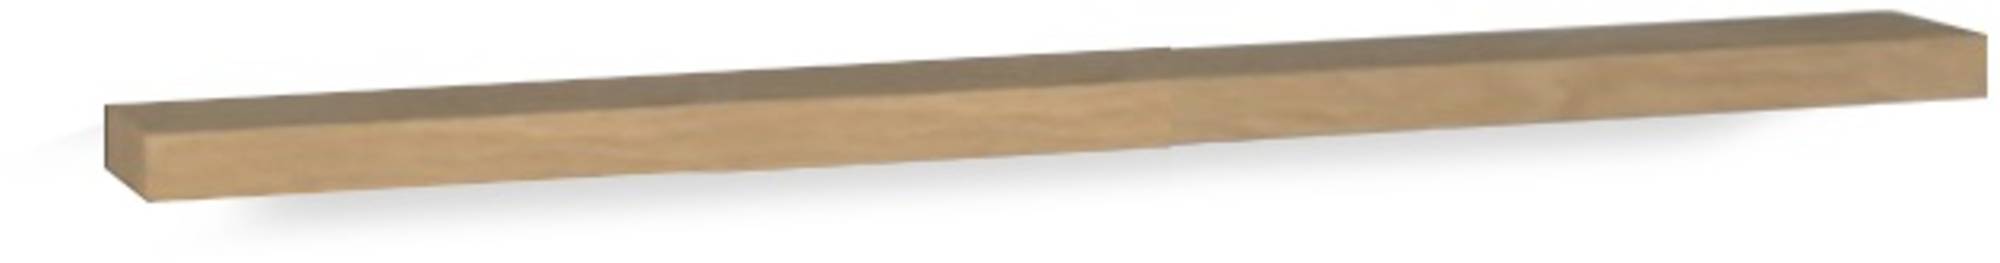 Pure Wood massief eiken planchet 80x12x3cm Old grey